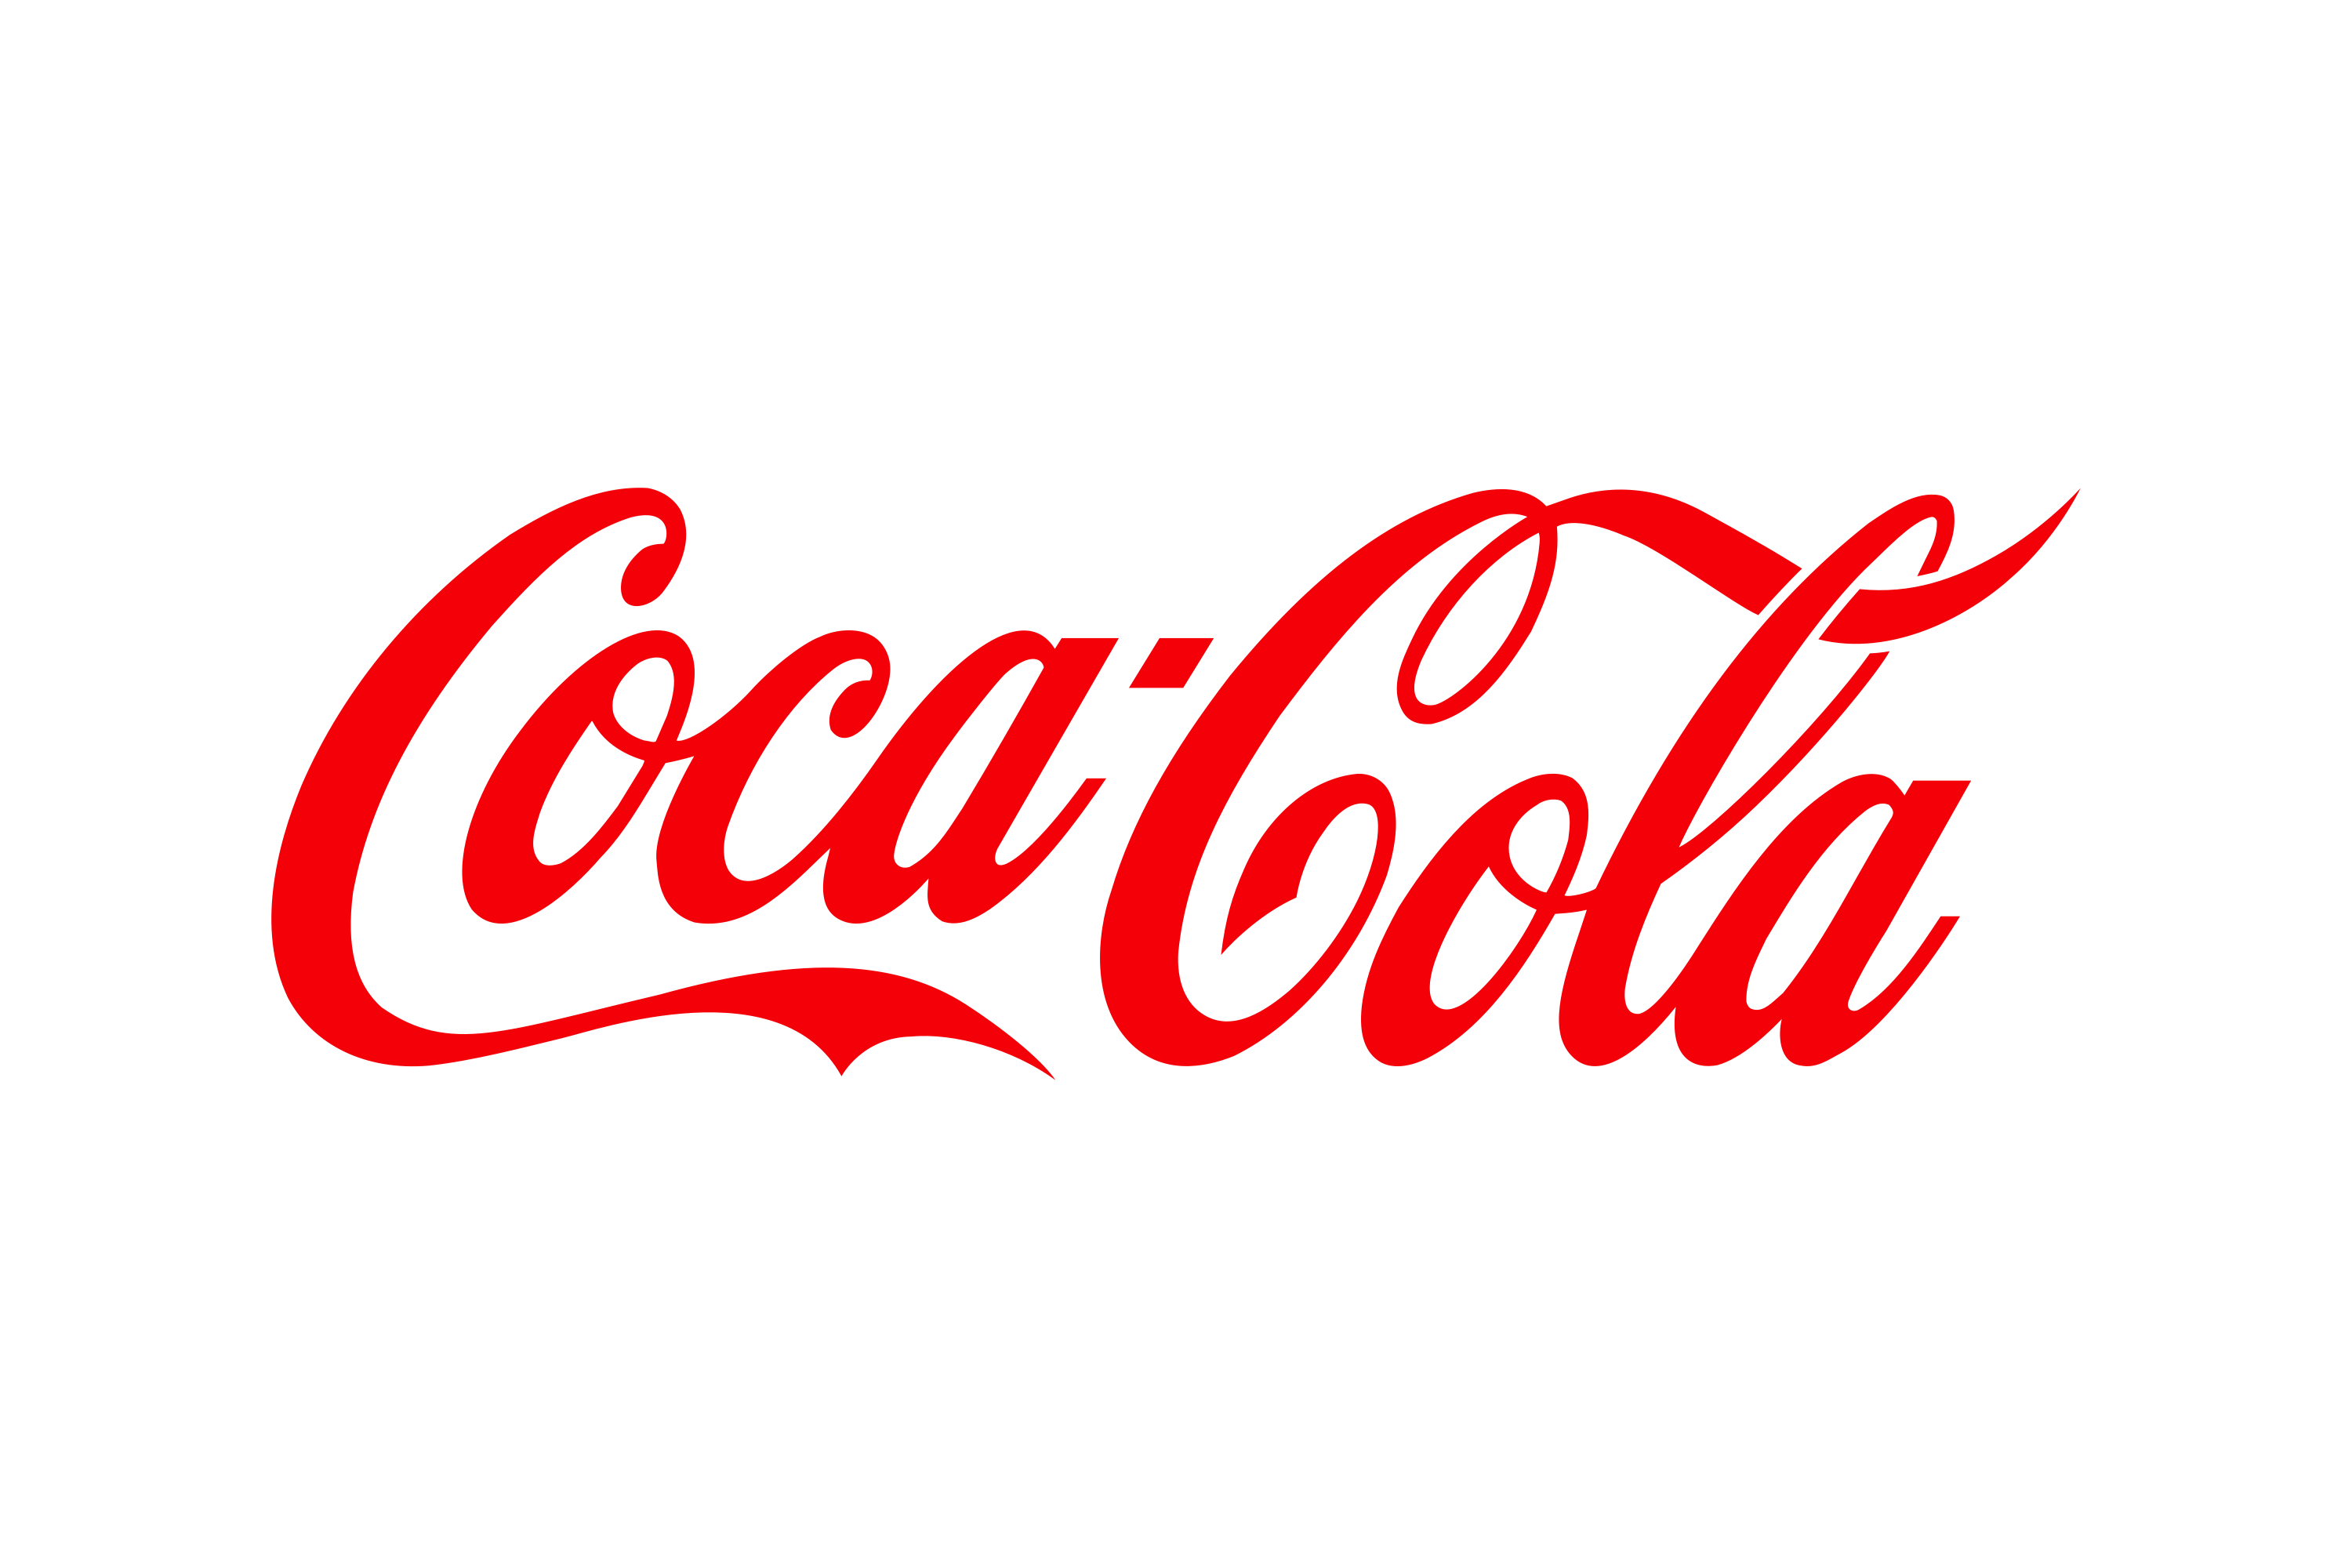 https://backbox.com/wp-content/uploads/Coca-Cola-2.png